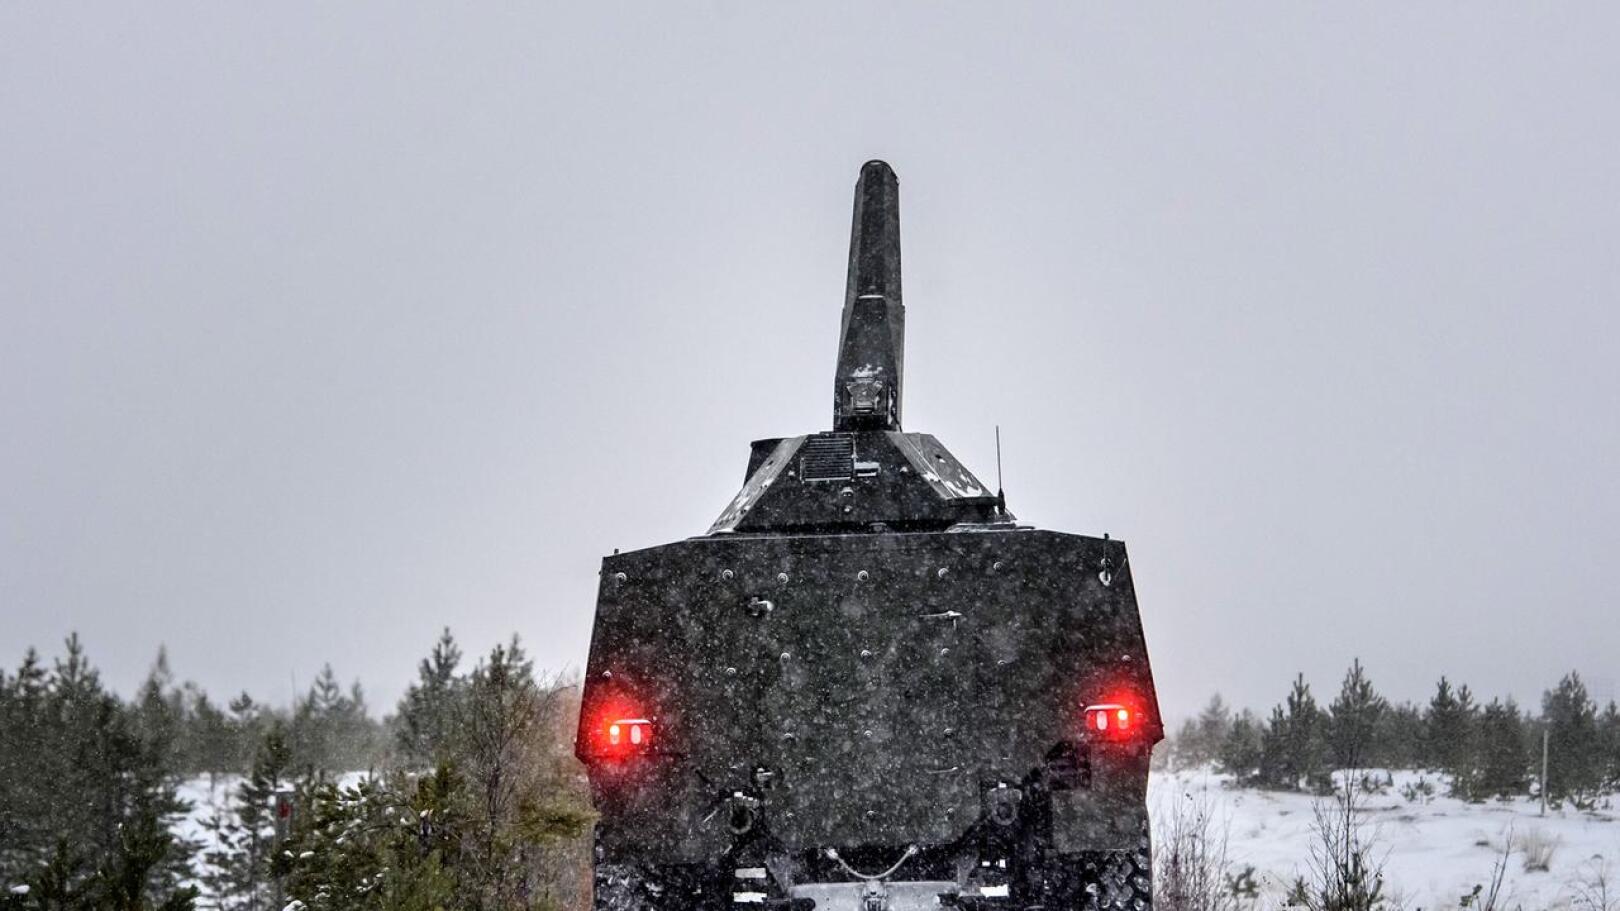 Patria testasi asejärjestelmiään joulukuussa Vattajalla. Kuvassa Patrian 6x6 panssaroitu pyöräajoneuvo.